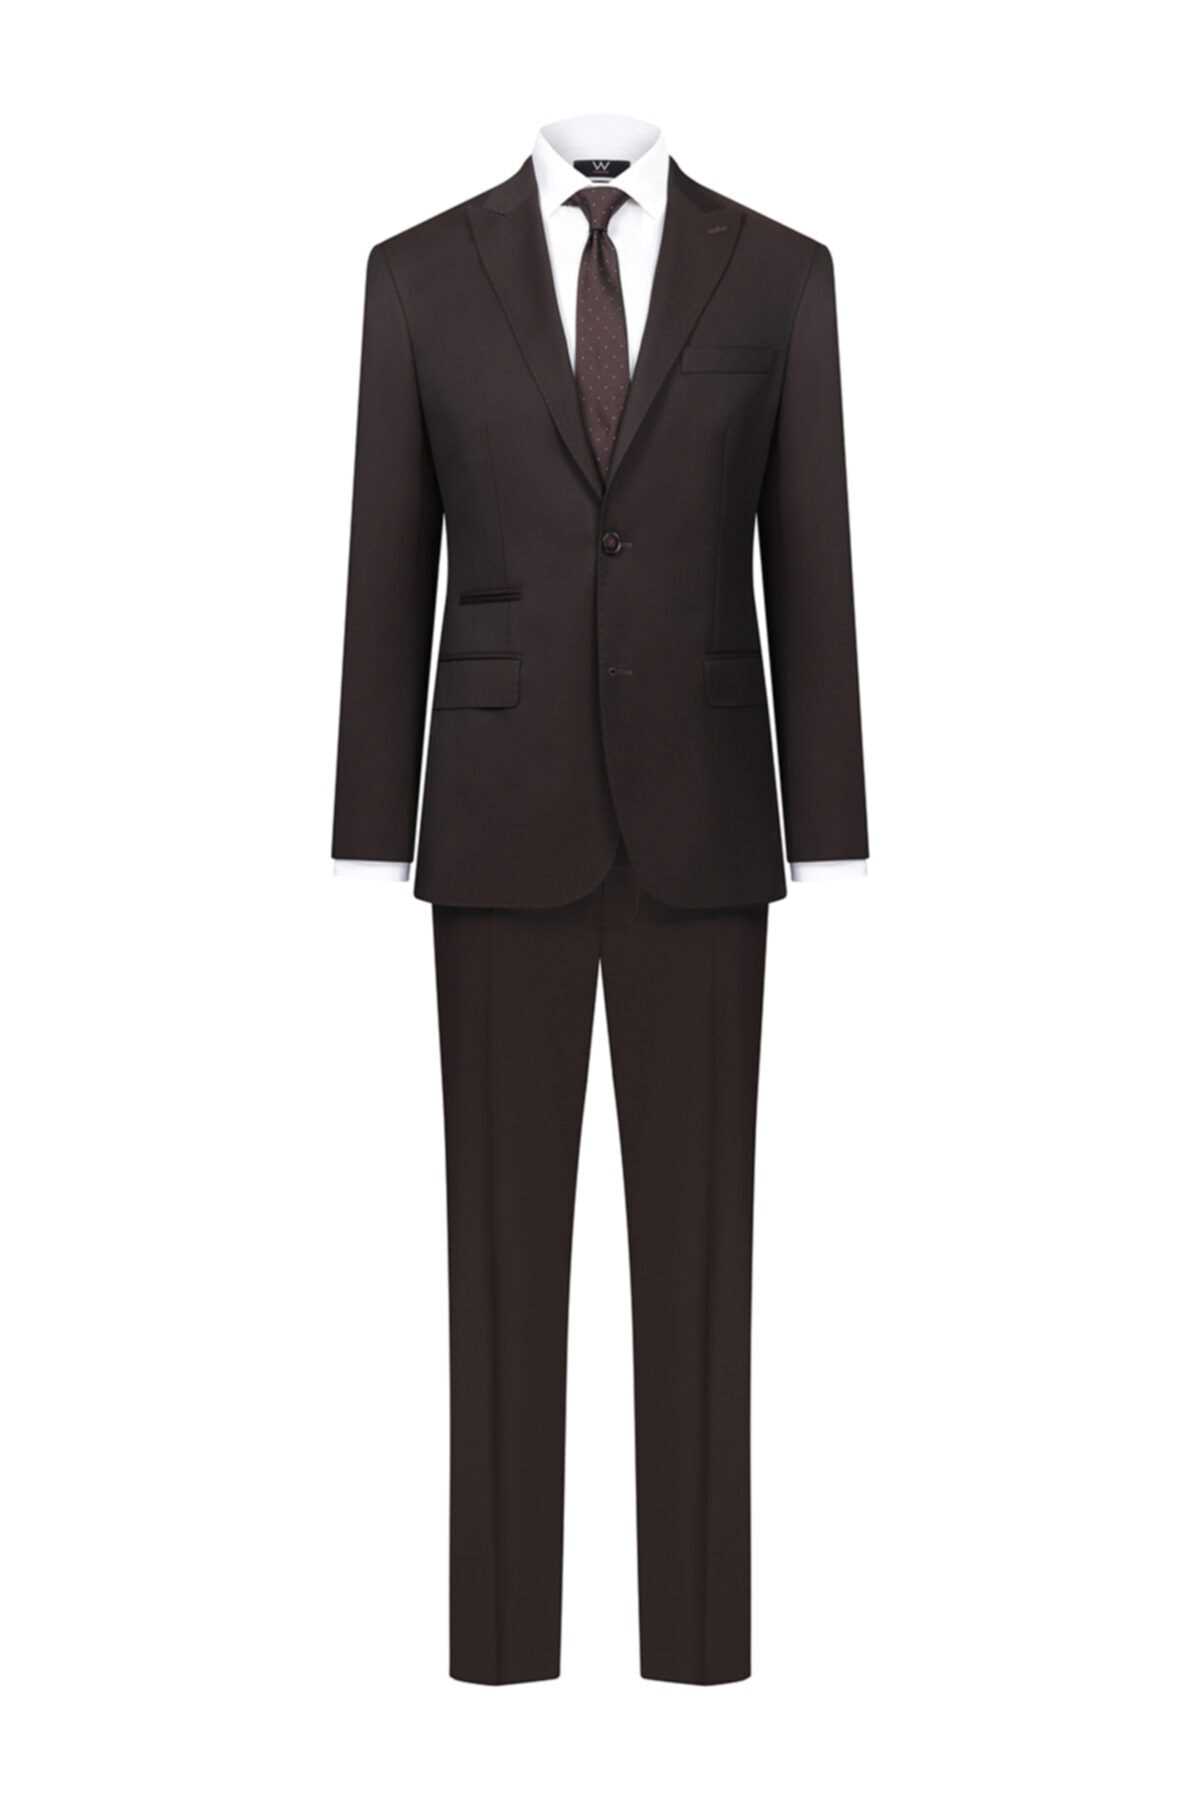 فروش کت شلوار مردانه ترک مجلسی برند W Collection رنگ زرشکی ty49601754